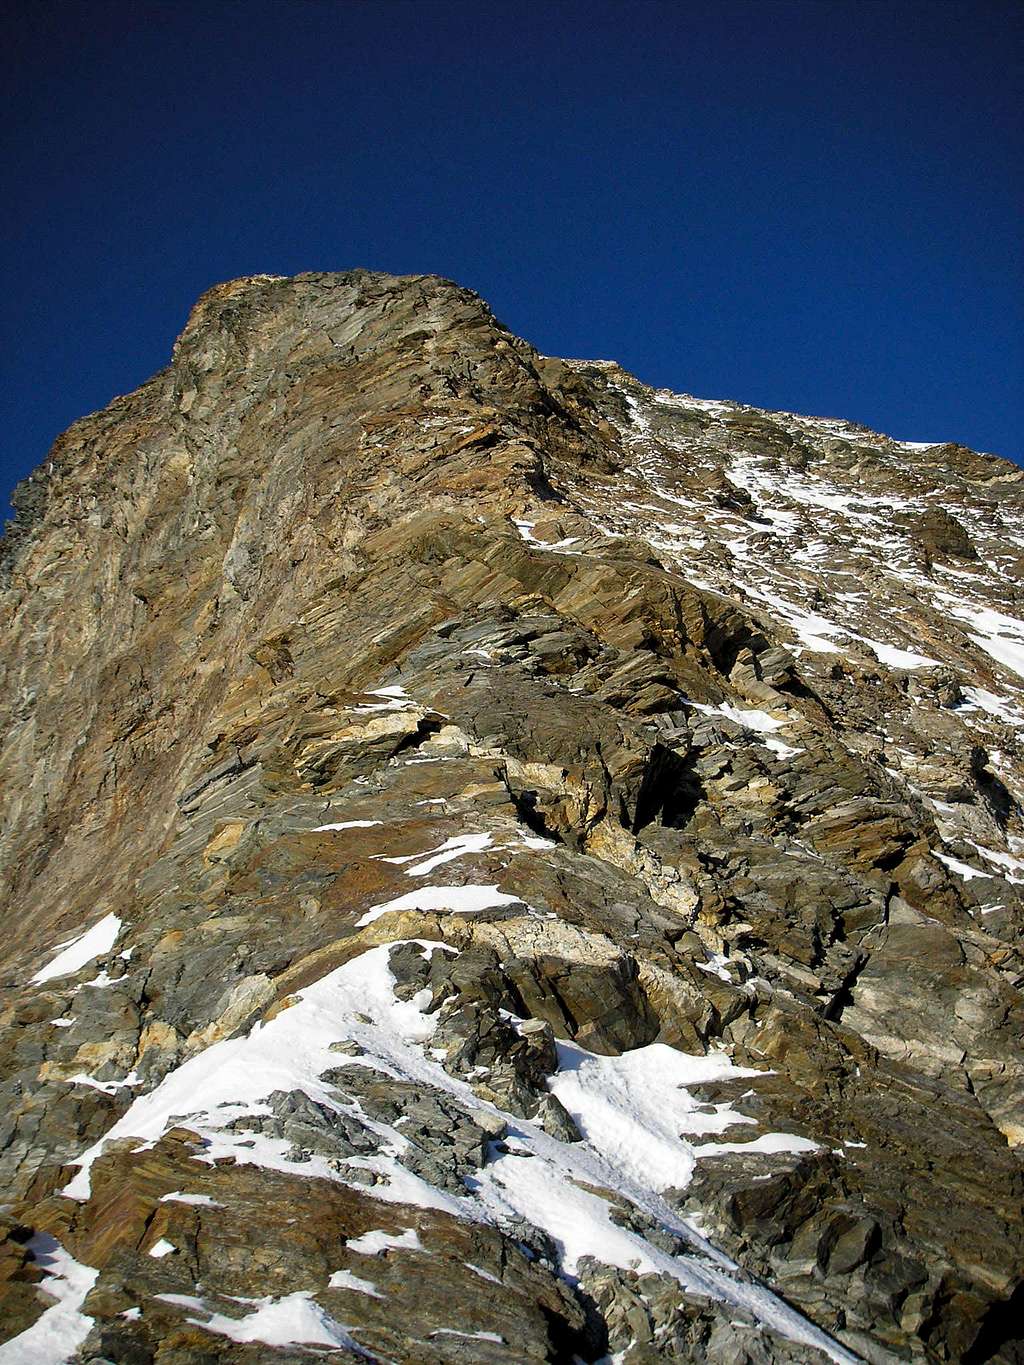 Ridge of Matterhorn 4478m